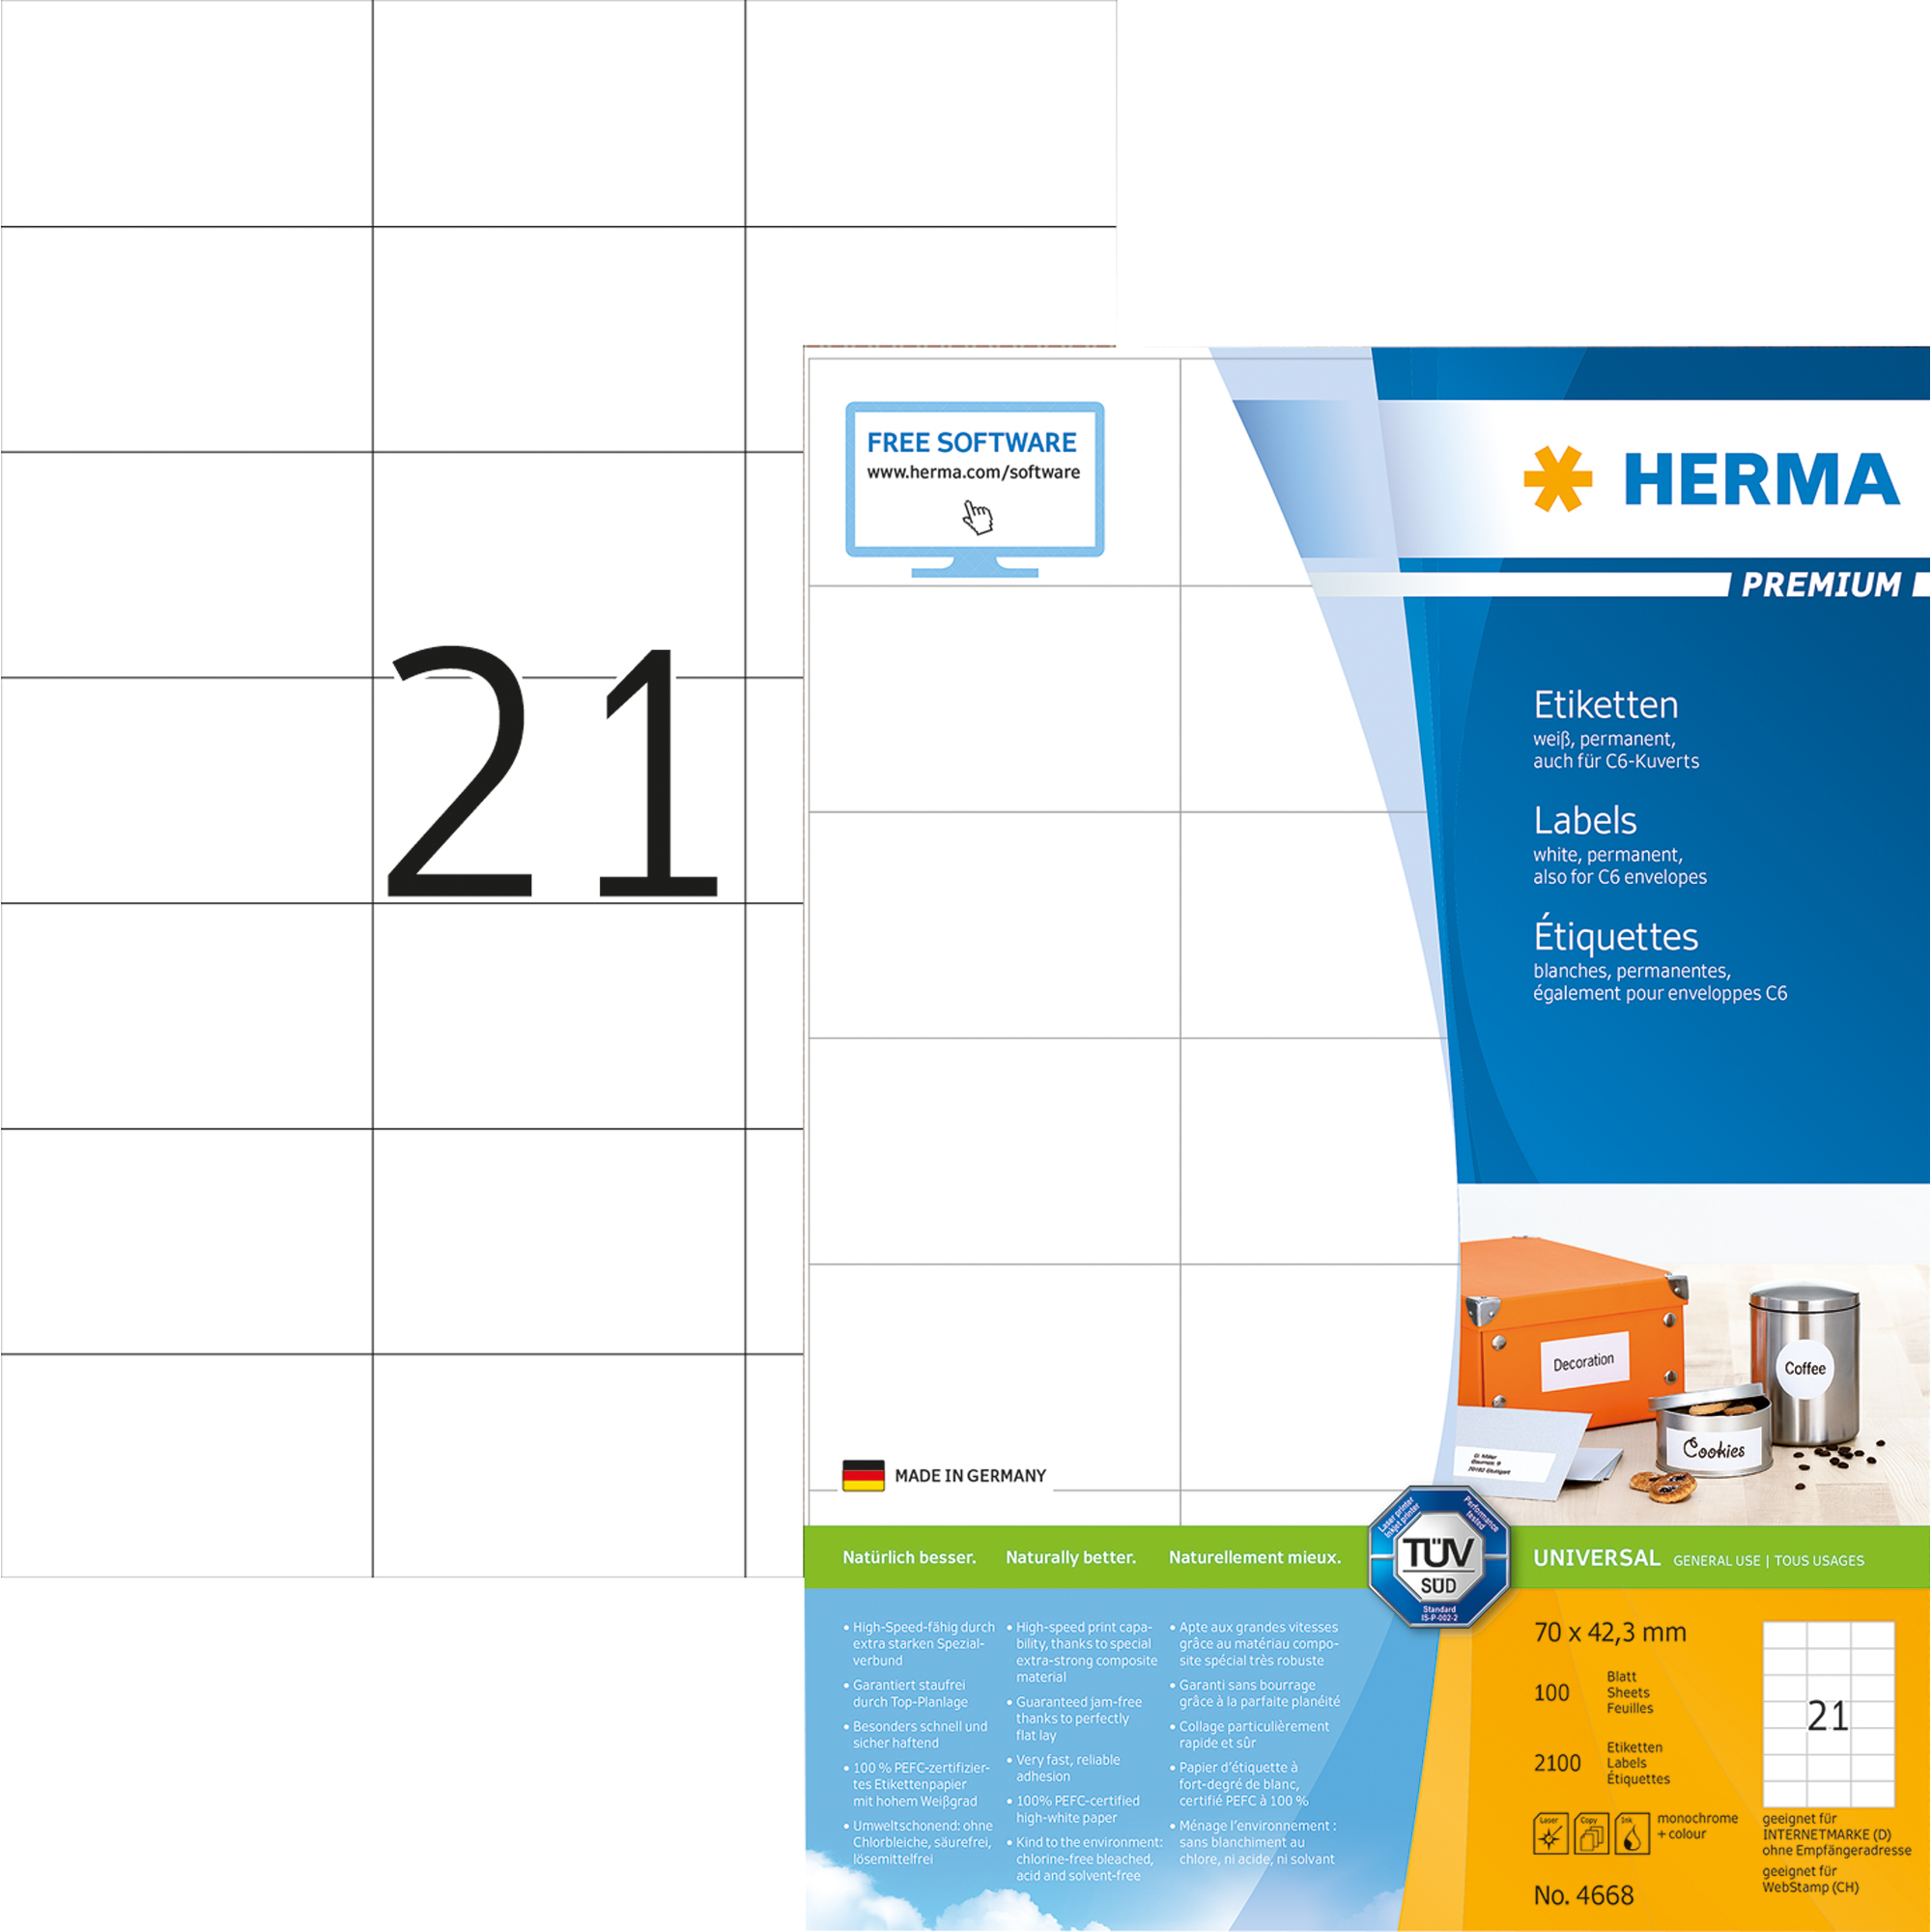 HERMA Universaletikett Premium weiß, 70 x 42,3 mm, 2.100 St.